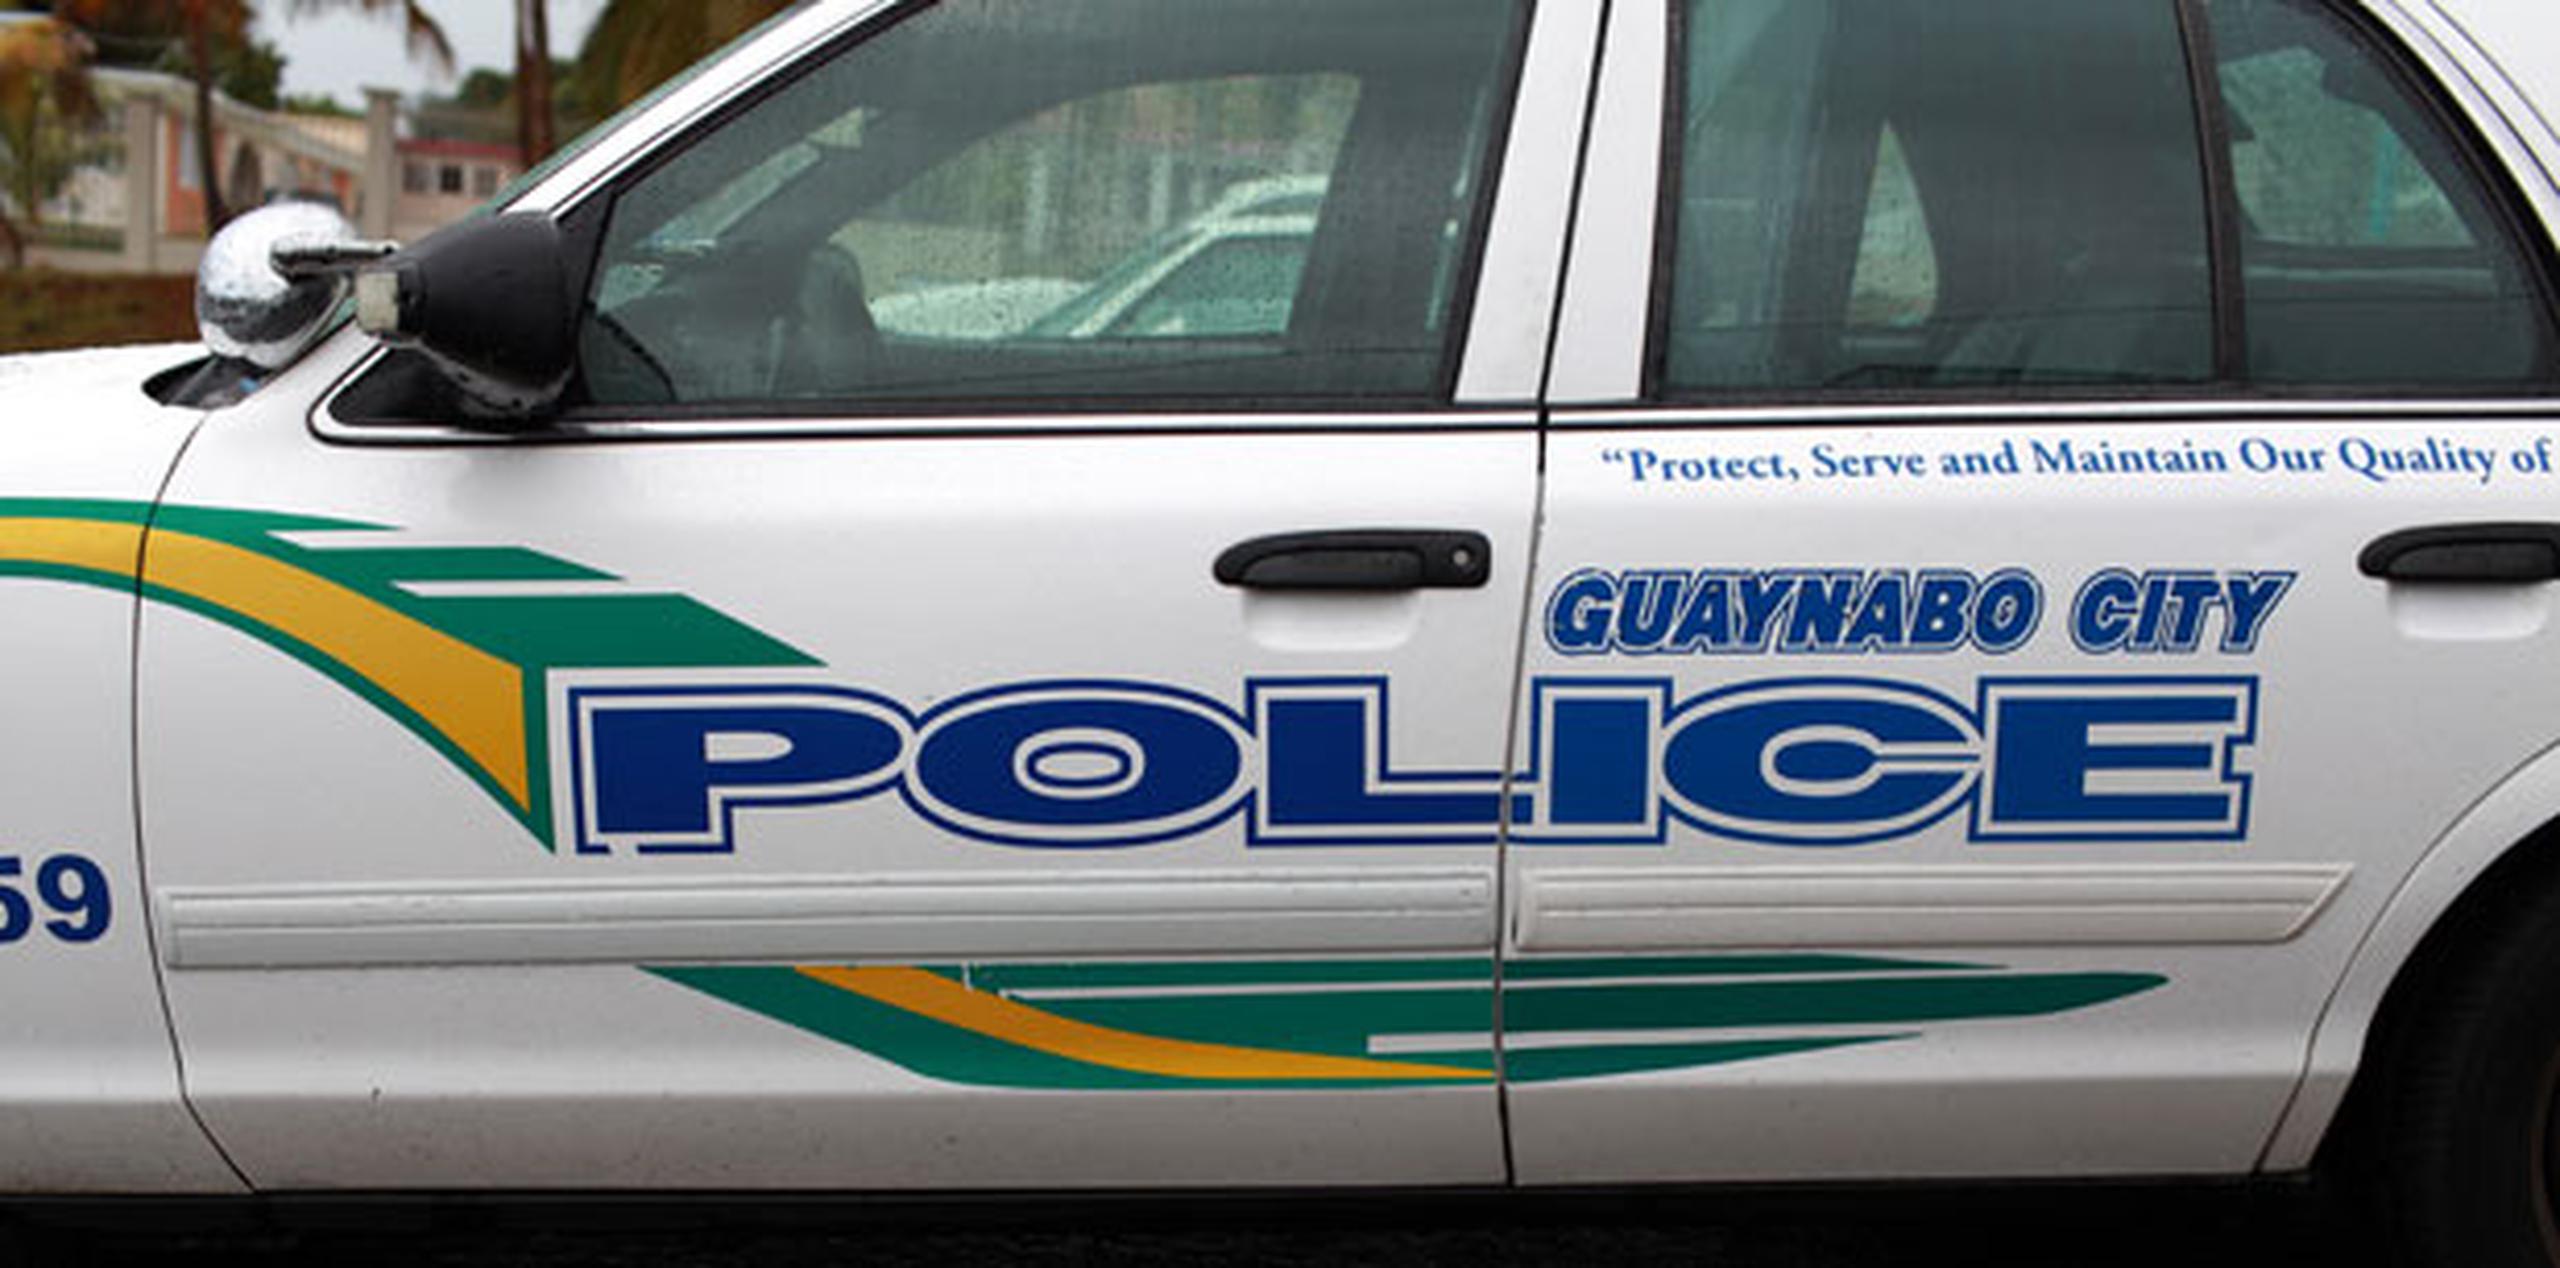 La querella fue atendida inicialmente por agentes de la policía municipal de Guaynabo. (Archivo)